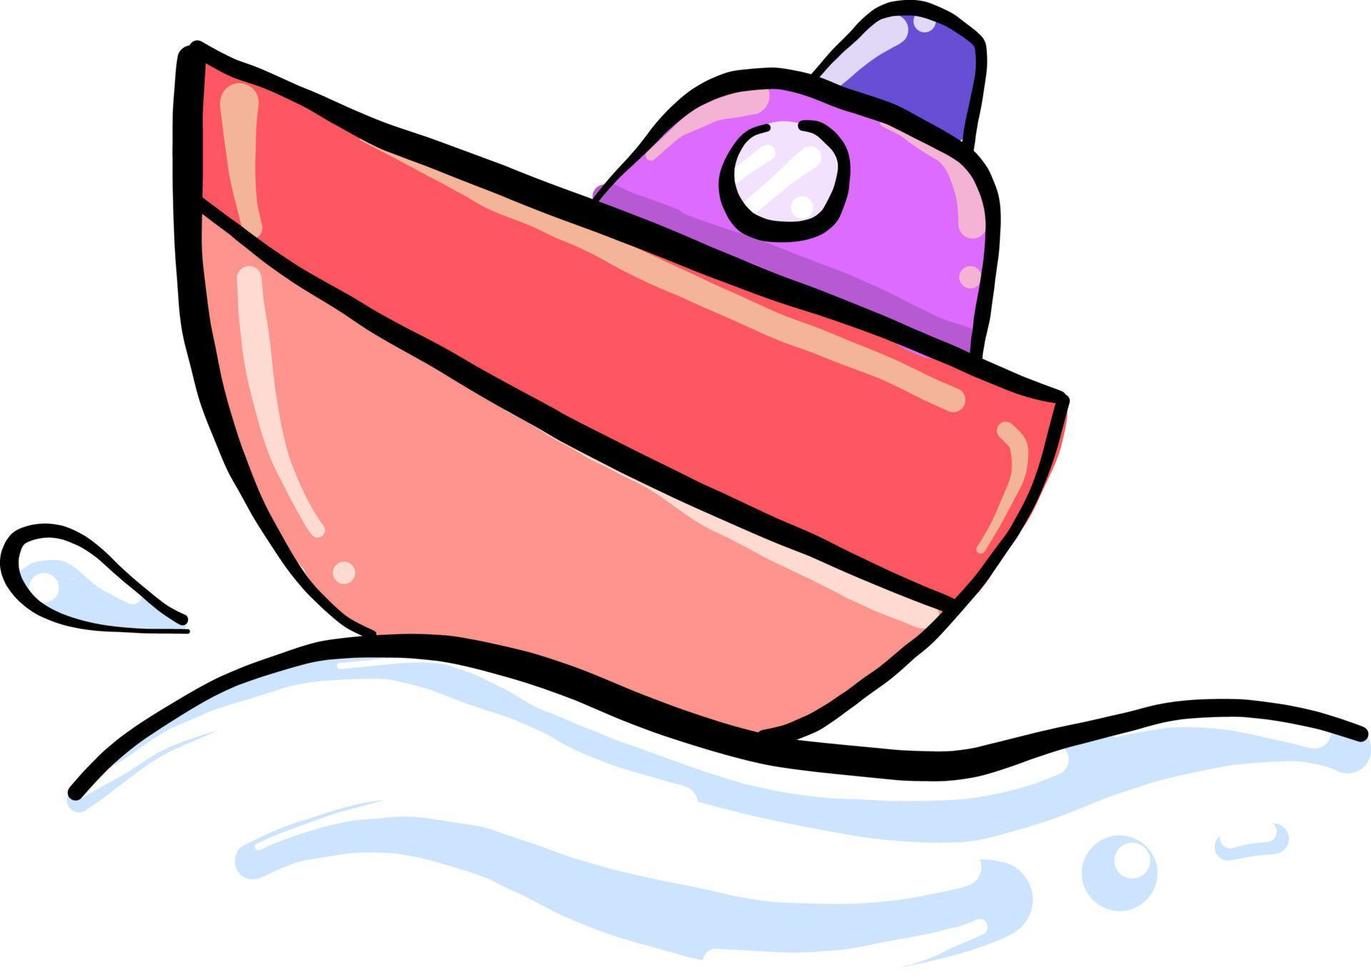 bateau sur l'eau, illustration, vecteur sur fond blanc.